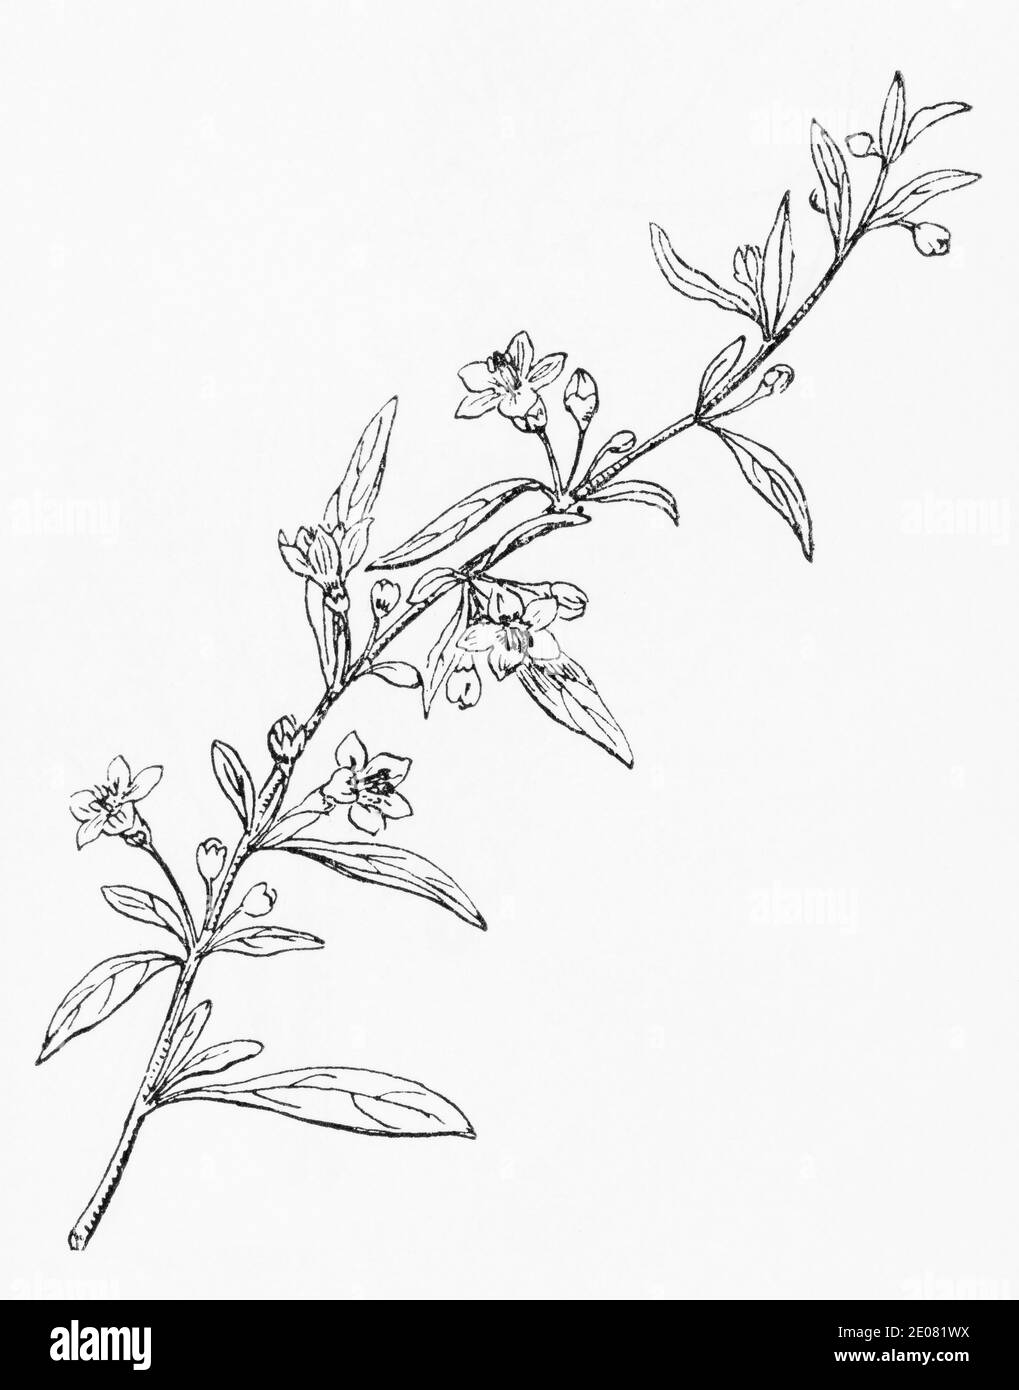 Alte botanische Illustration Gravur von Herzog von Argyll Teepflanze, Teepflanze / Lycium barbarum. Traditionelle Heilkräuter Pflanze. Siehe Hinweise Stockfoto